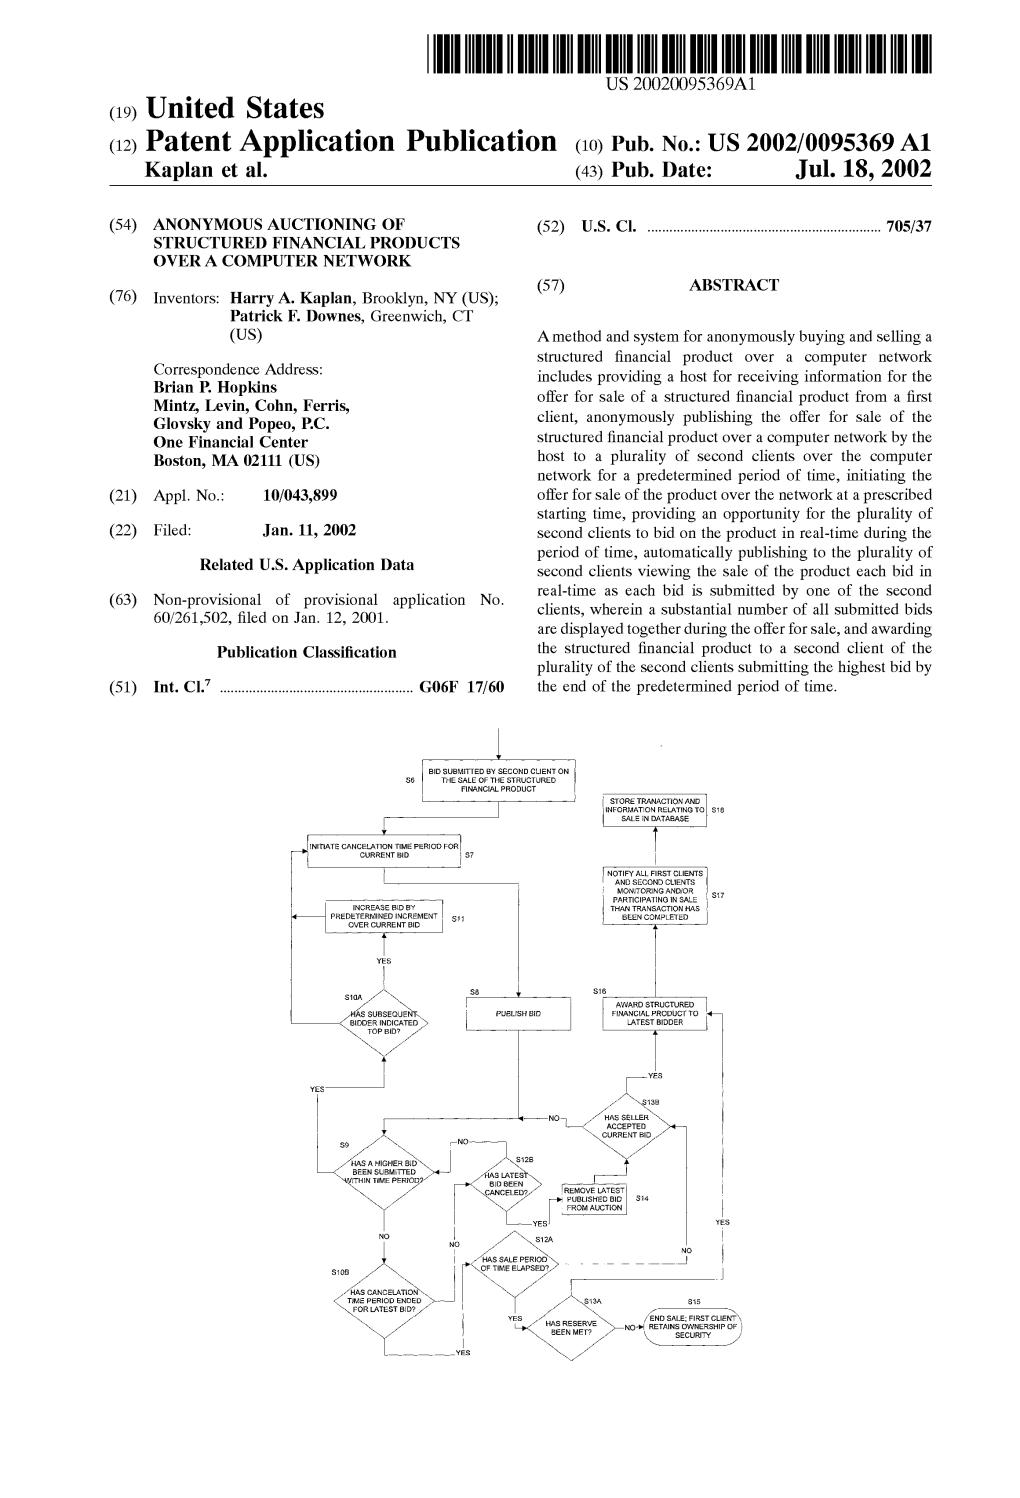 (12) Patent Application Publication (10) Pub. No.: US 2002/0095369 A1 Kaplan Et Al